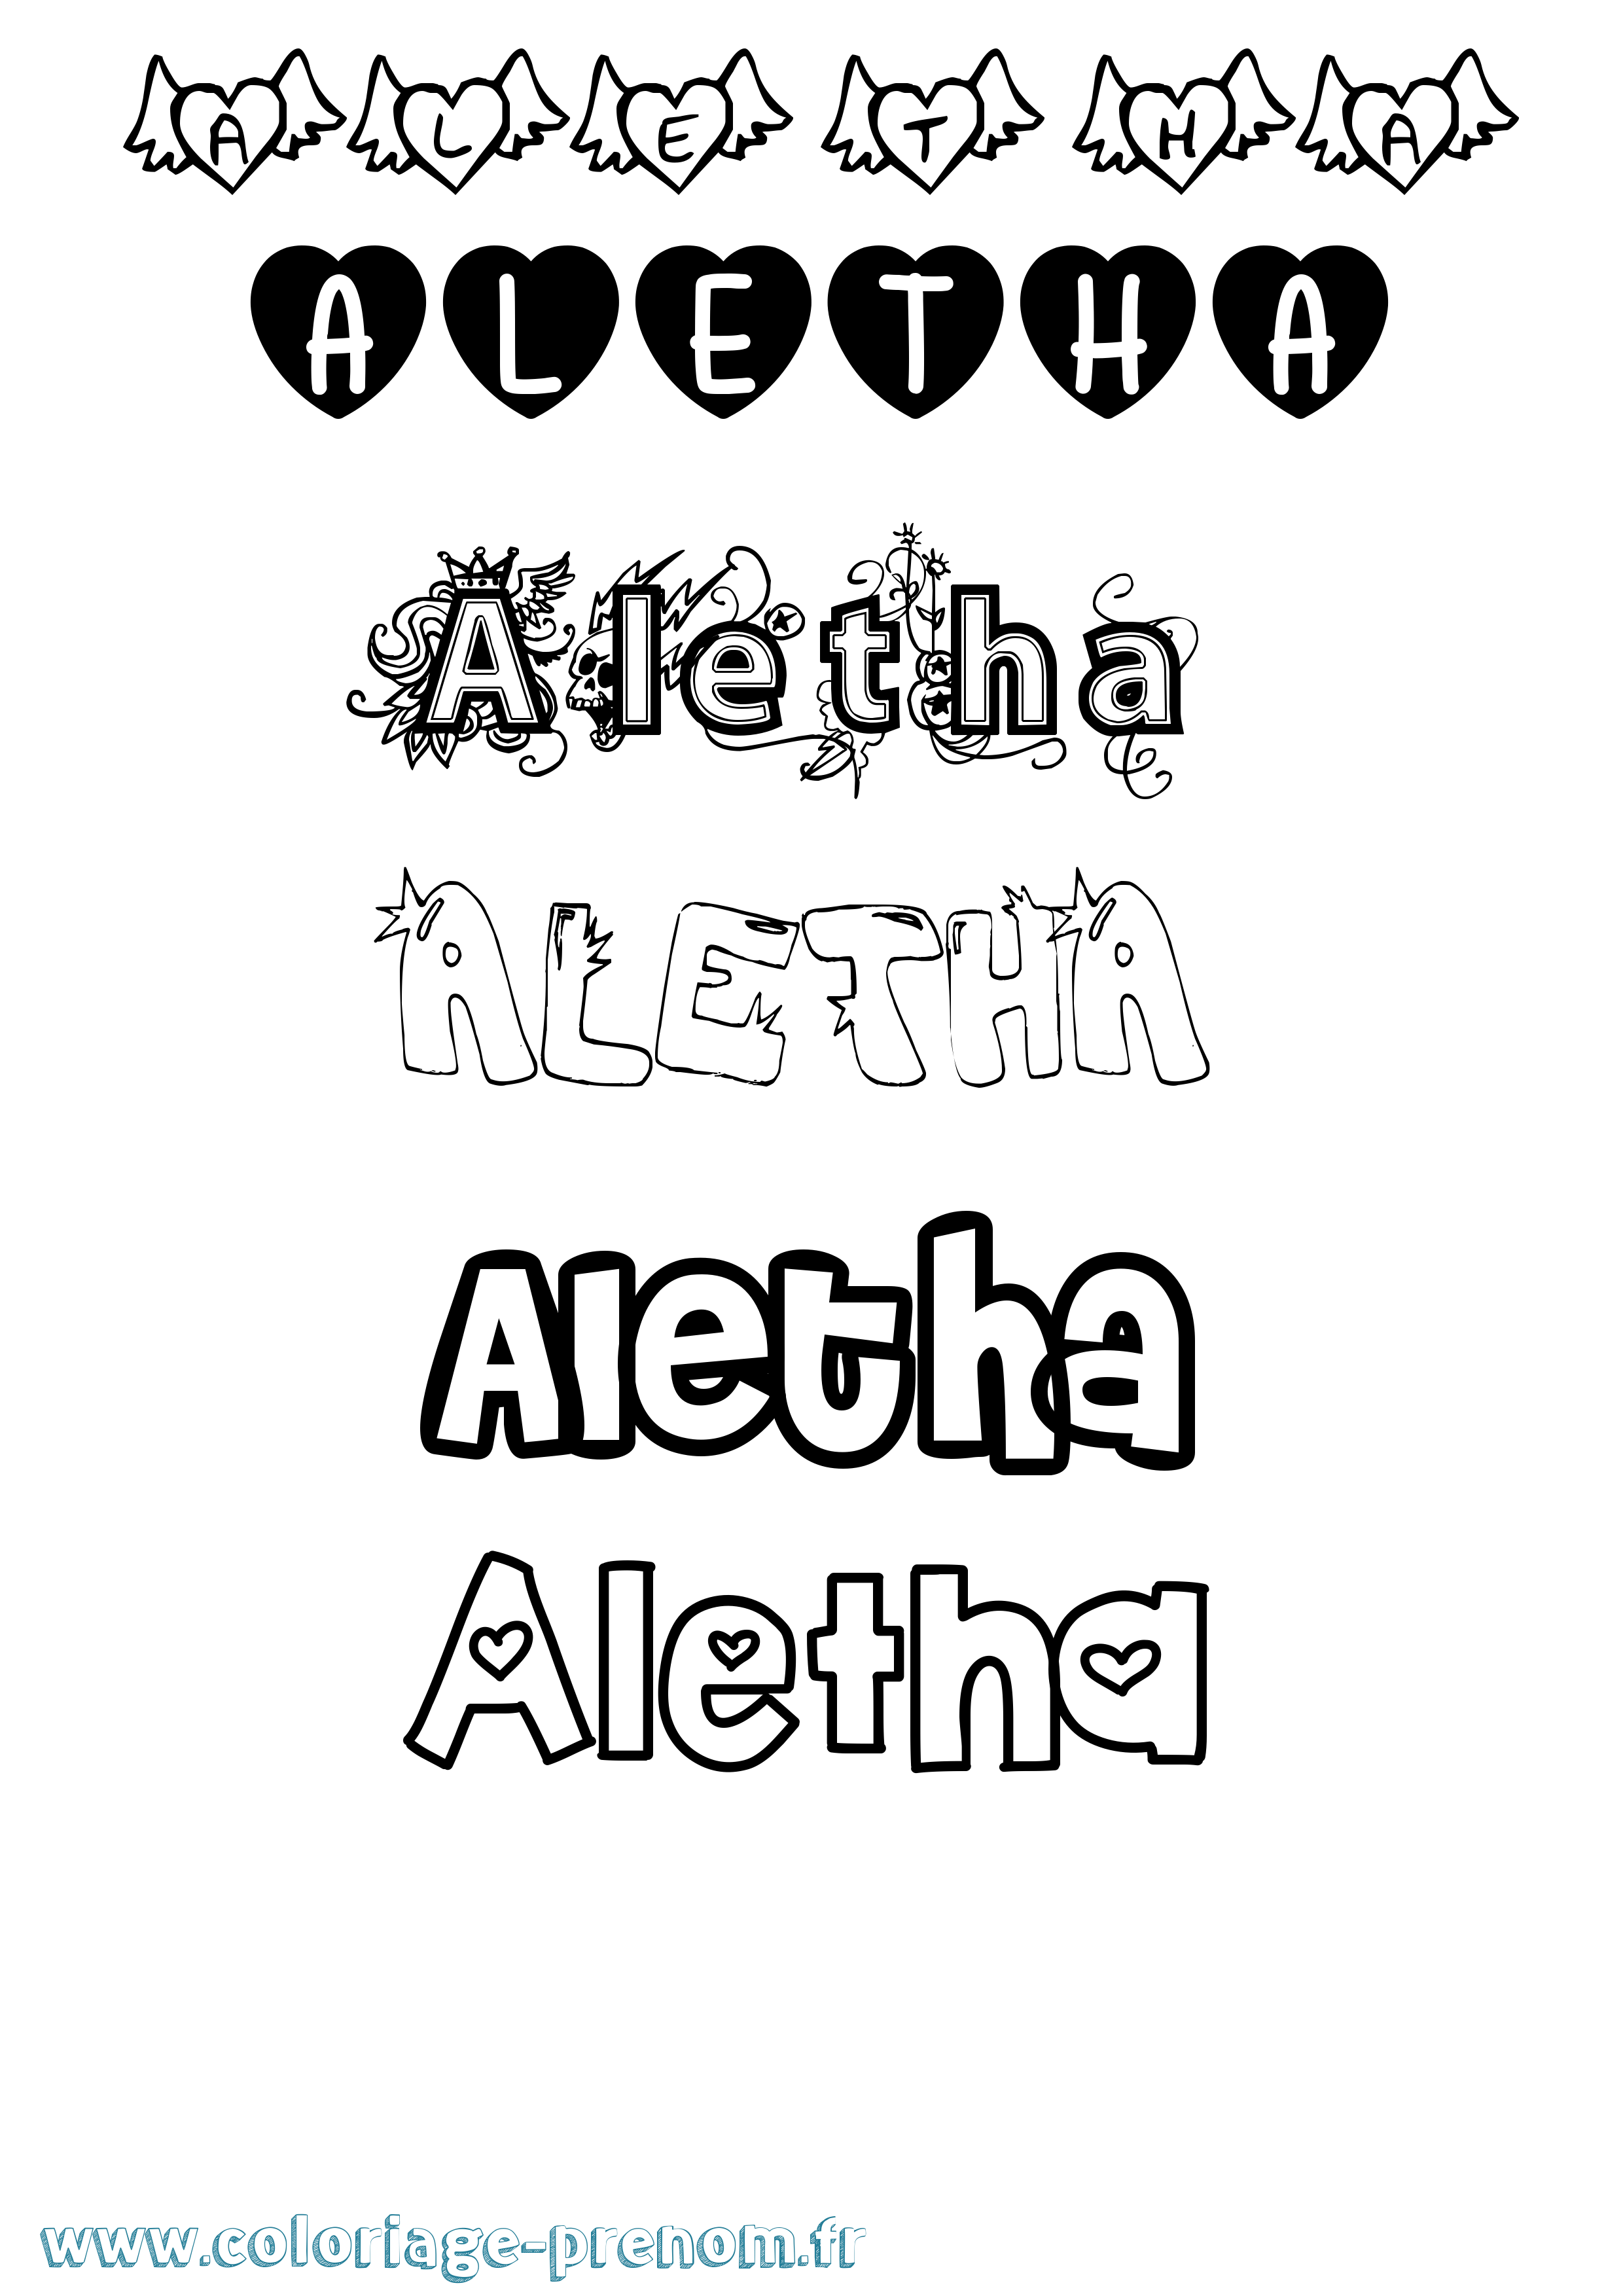 Coloriage prénom Aletha Girly